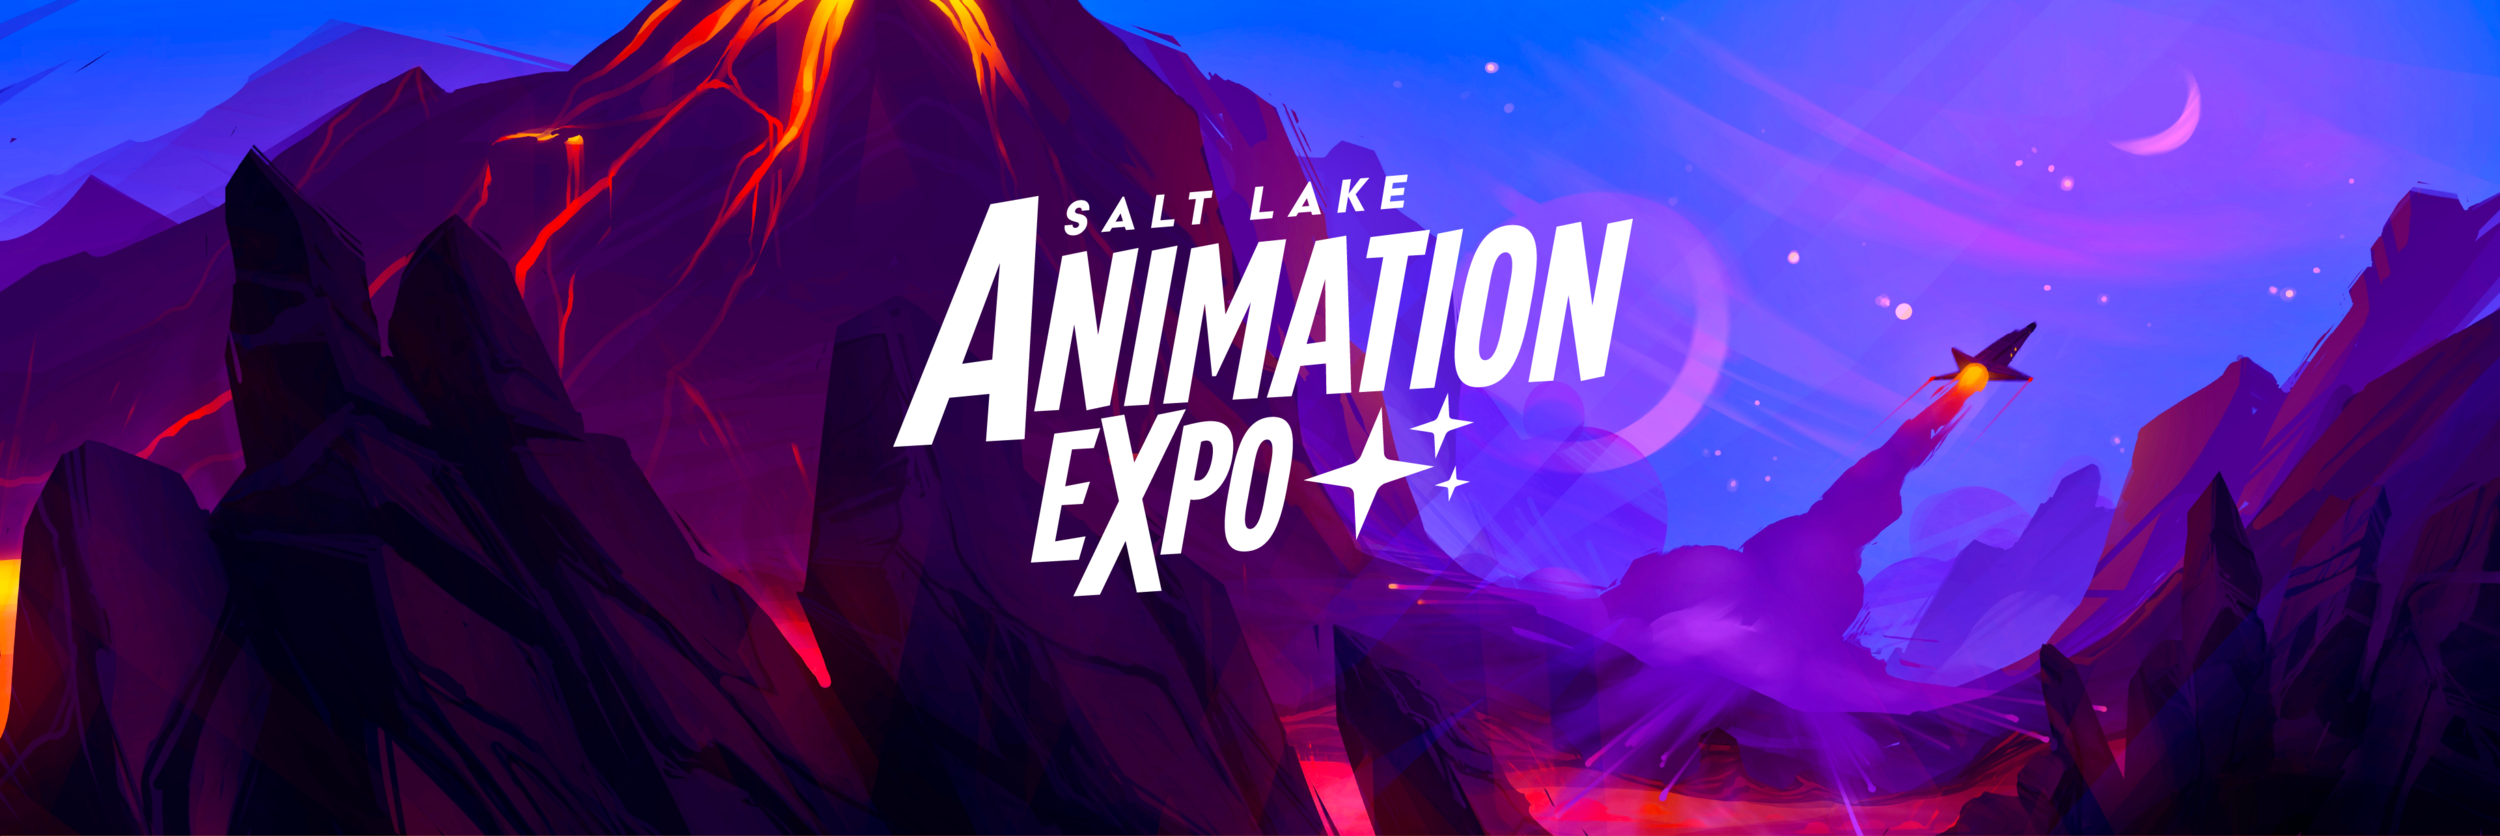 Salt Lake Animation Expo